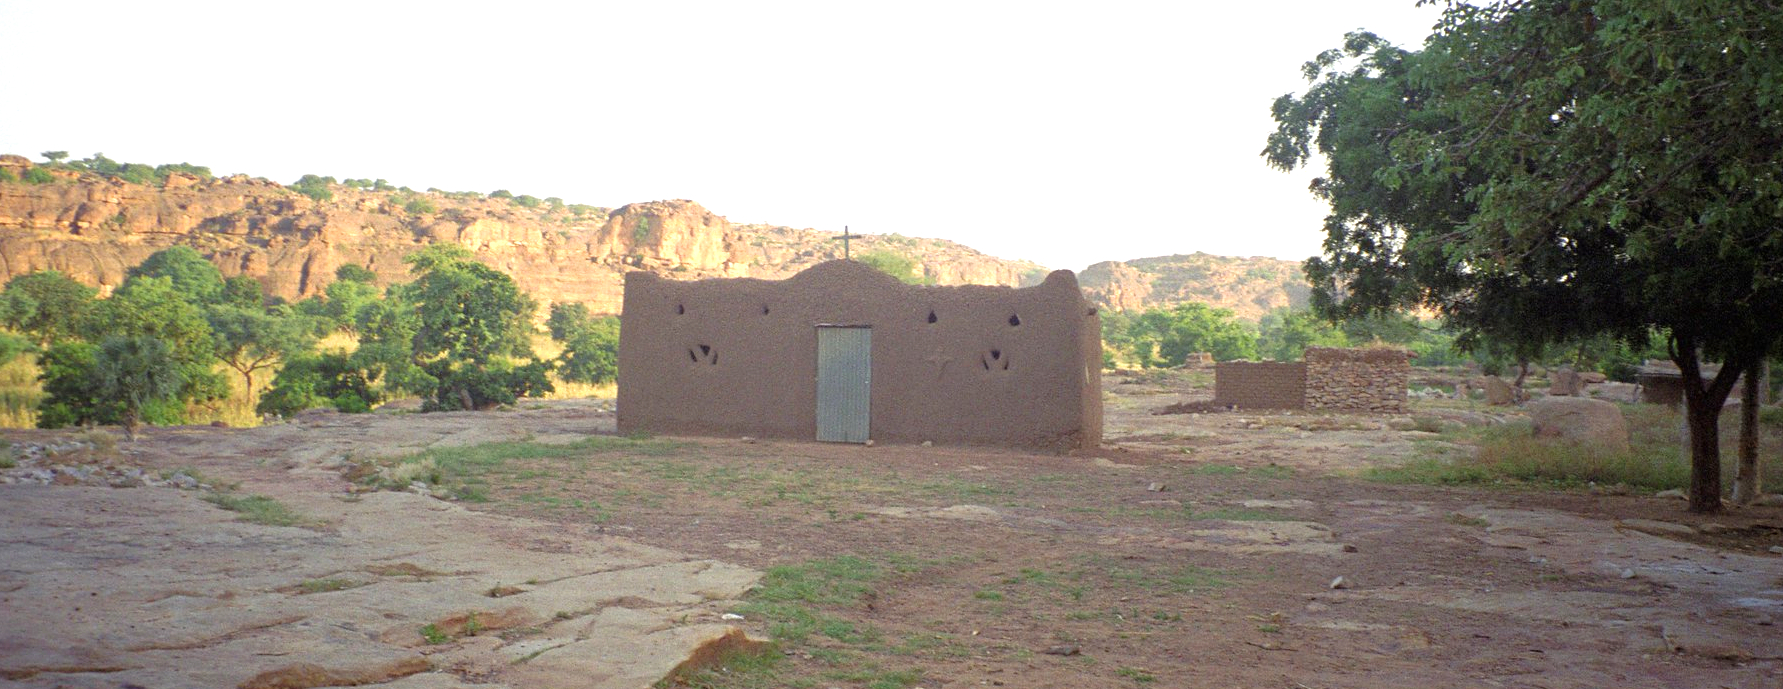 Dans certaines régions du Mali, les chrétiens n'osent plus aller à l'église | © photo d'illustration/upyernoz/Flickr/CC BY 2.0